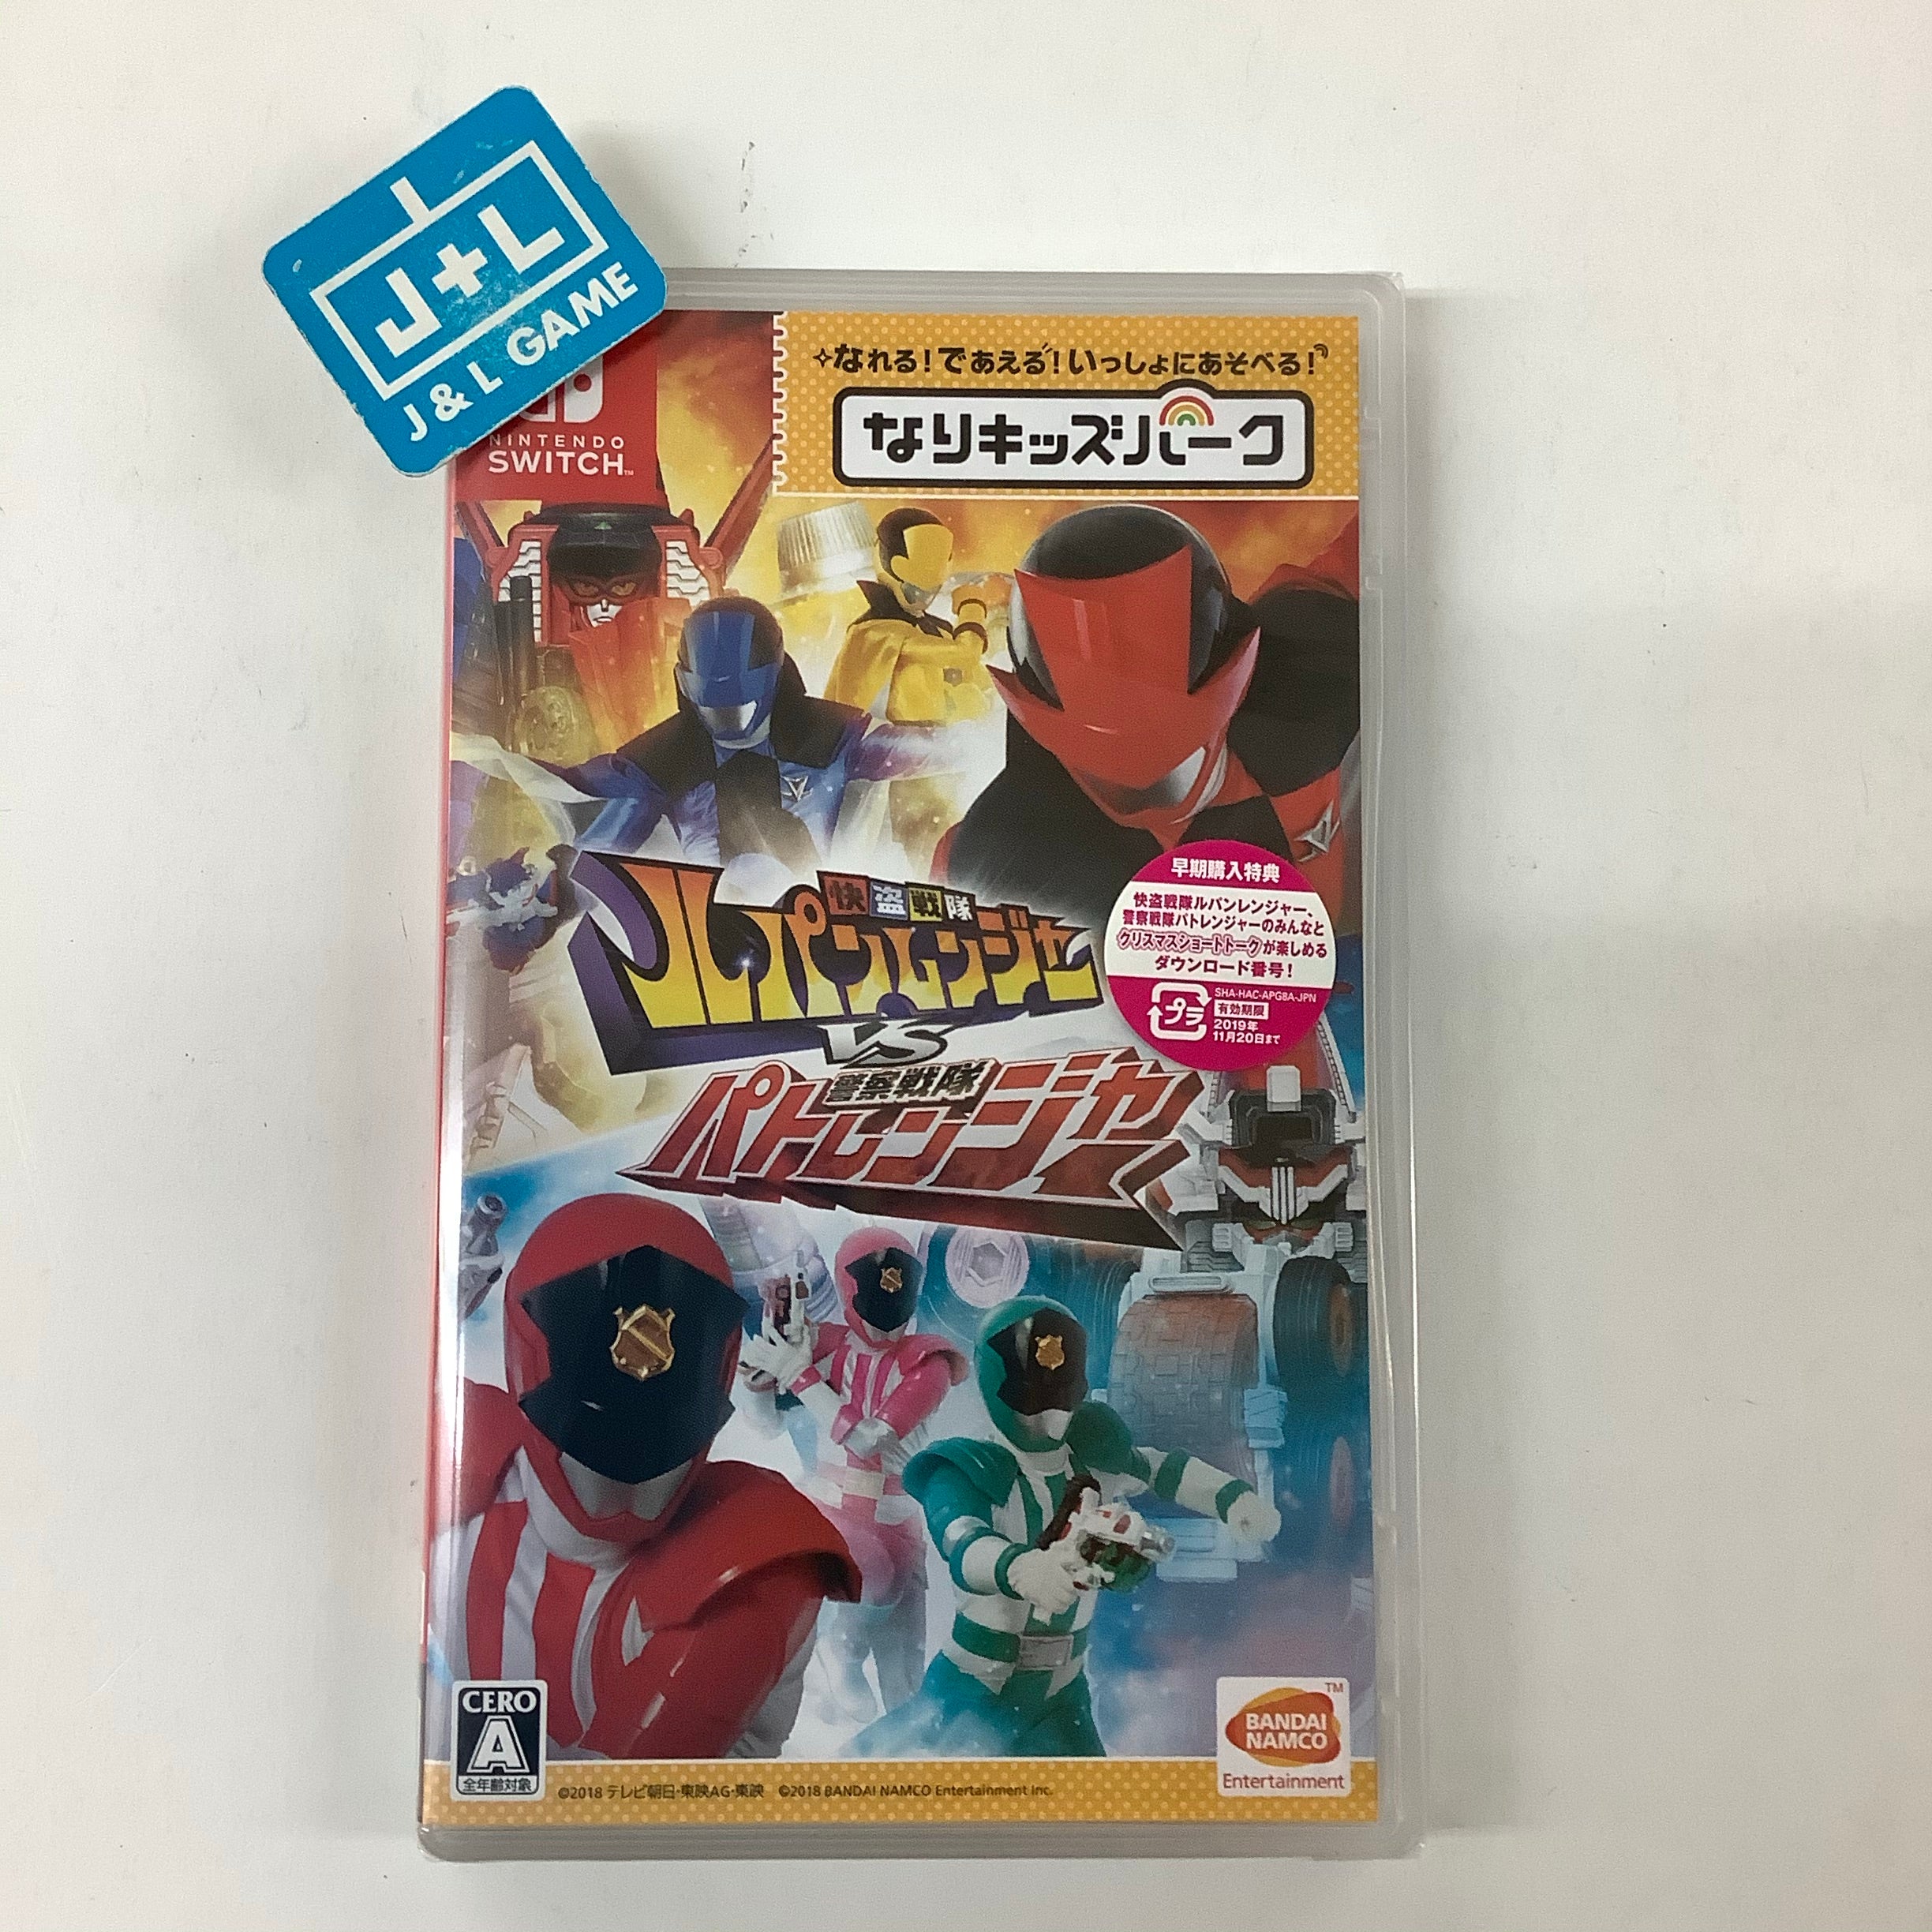 Nari Kids Park: Kaitou Sentai Lupinranger VS Keisatsu Sentai Patoranger - (NSW) Nintendo Switch (Japanese Import) Video Games Bandai Namco Games   